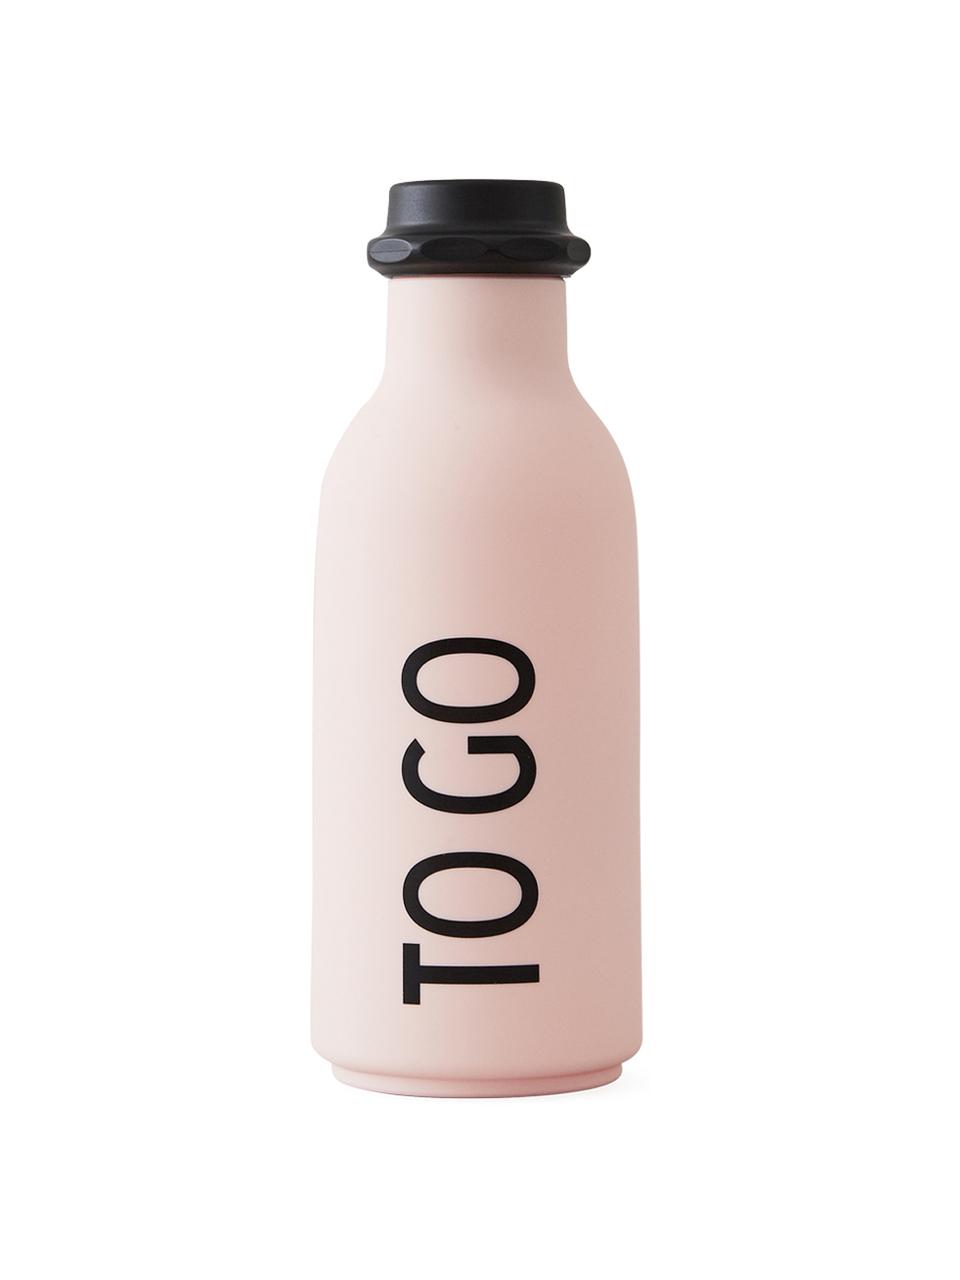 Design Isolierflasche TO GO in Rosa mit Schriftzug, Flasche: Tritan (Kunststoff), BPA-, Deckel: Polypropylen, Rosa matt, Schwarz, Ø 8 x H 20 cm